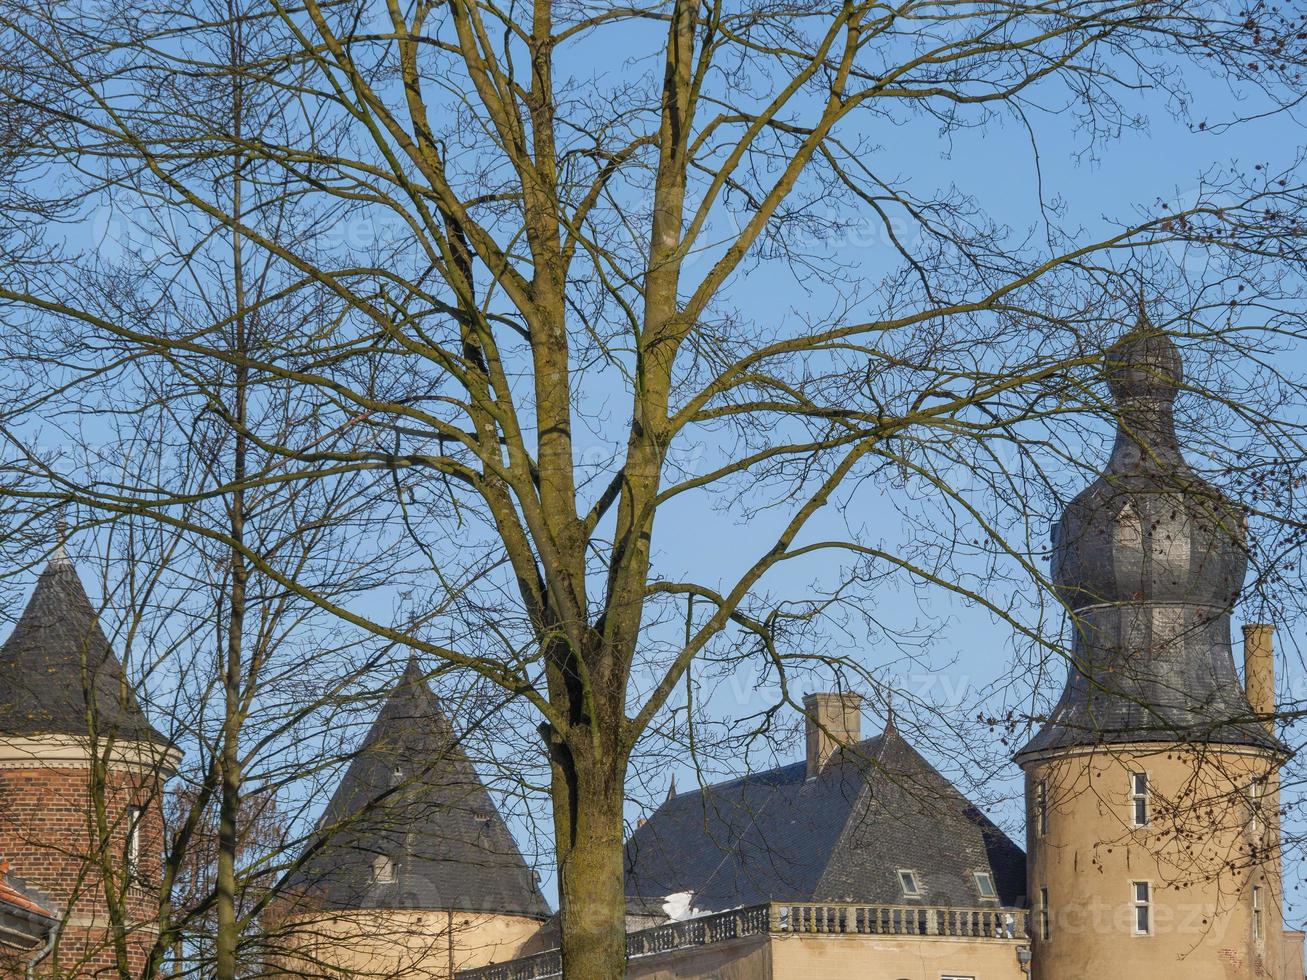 vintertid på ett slott i tyskland foto